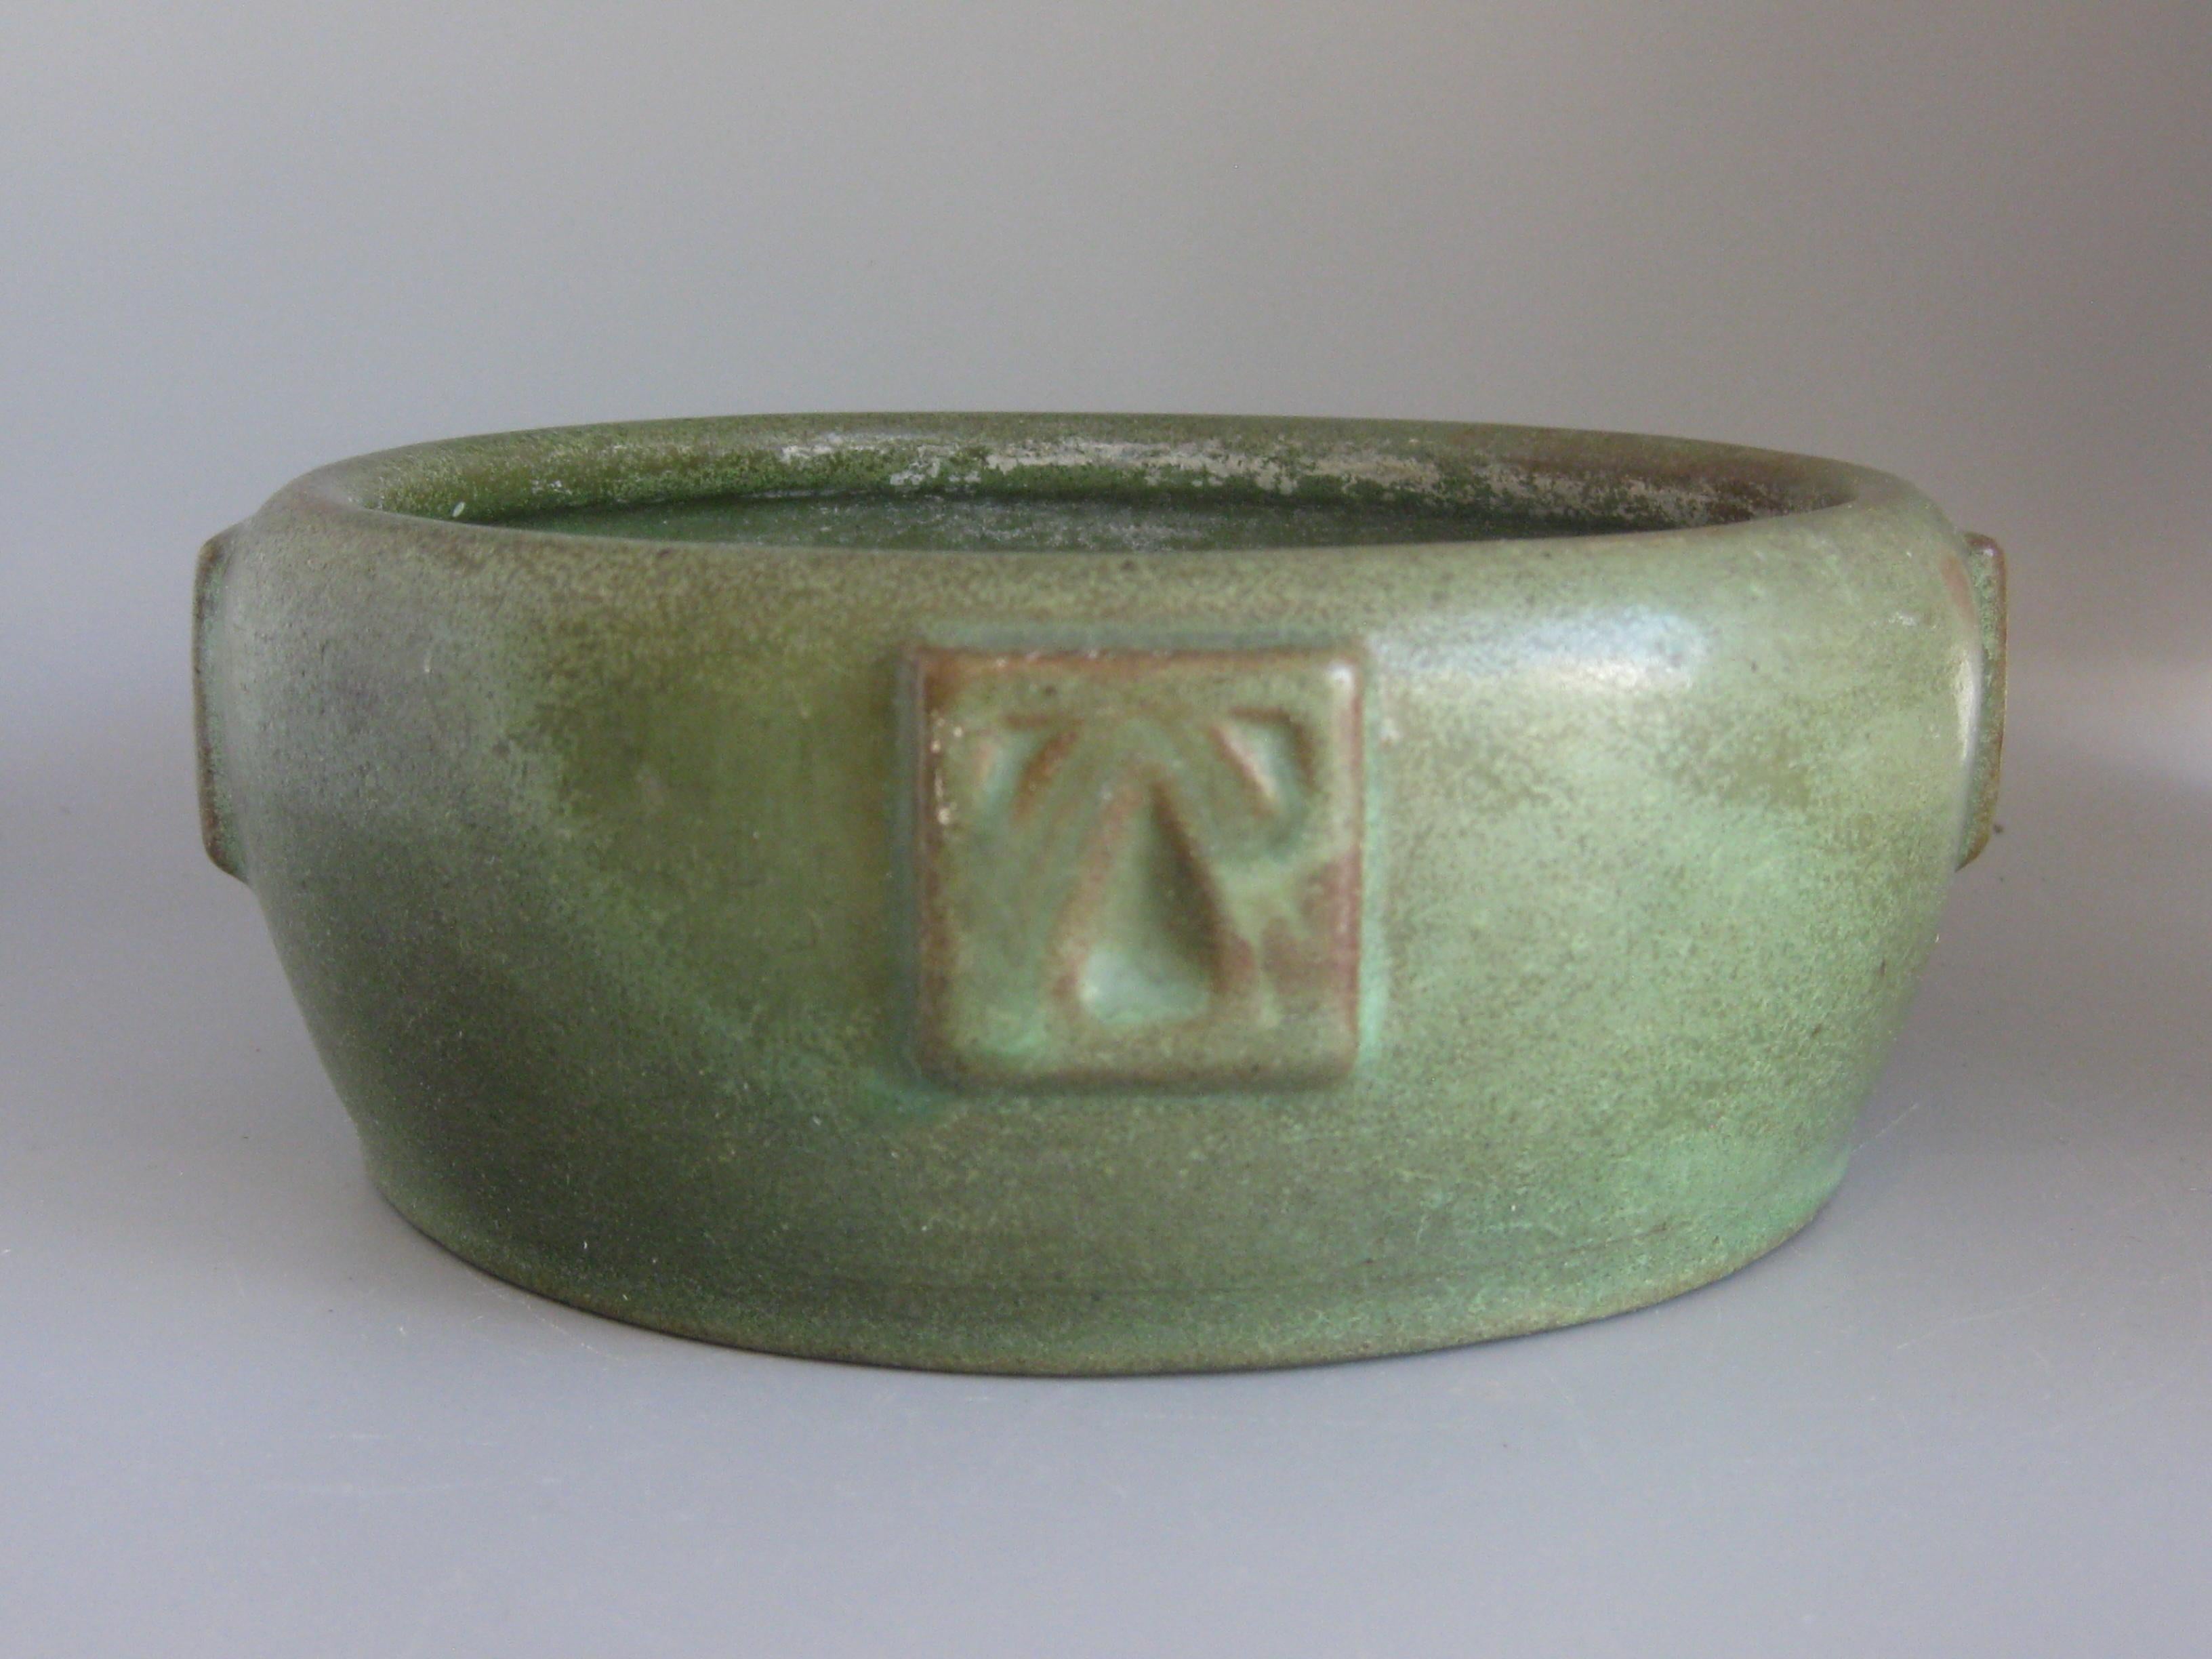 Magnifique bol en poterie d'art Arts & Crafts vert mat fabriqué par Peters & Reed à Zanesville, Ohio. Il date du début des années 1900. Merveilleuse couleur et forme. Il y a des décorations sur les côtés. S'intégrerait parfaitement dans tout décor